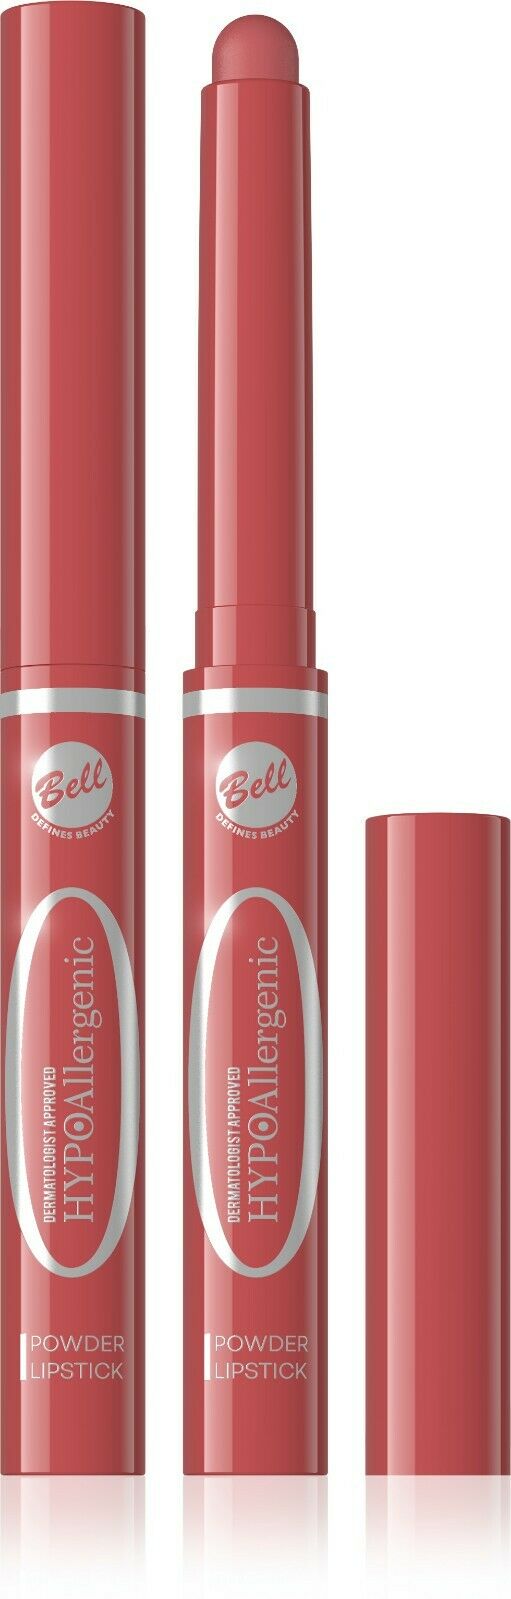 Bell Hypoallergenic Powder Lipstick 02